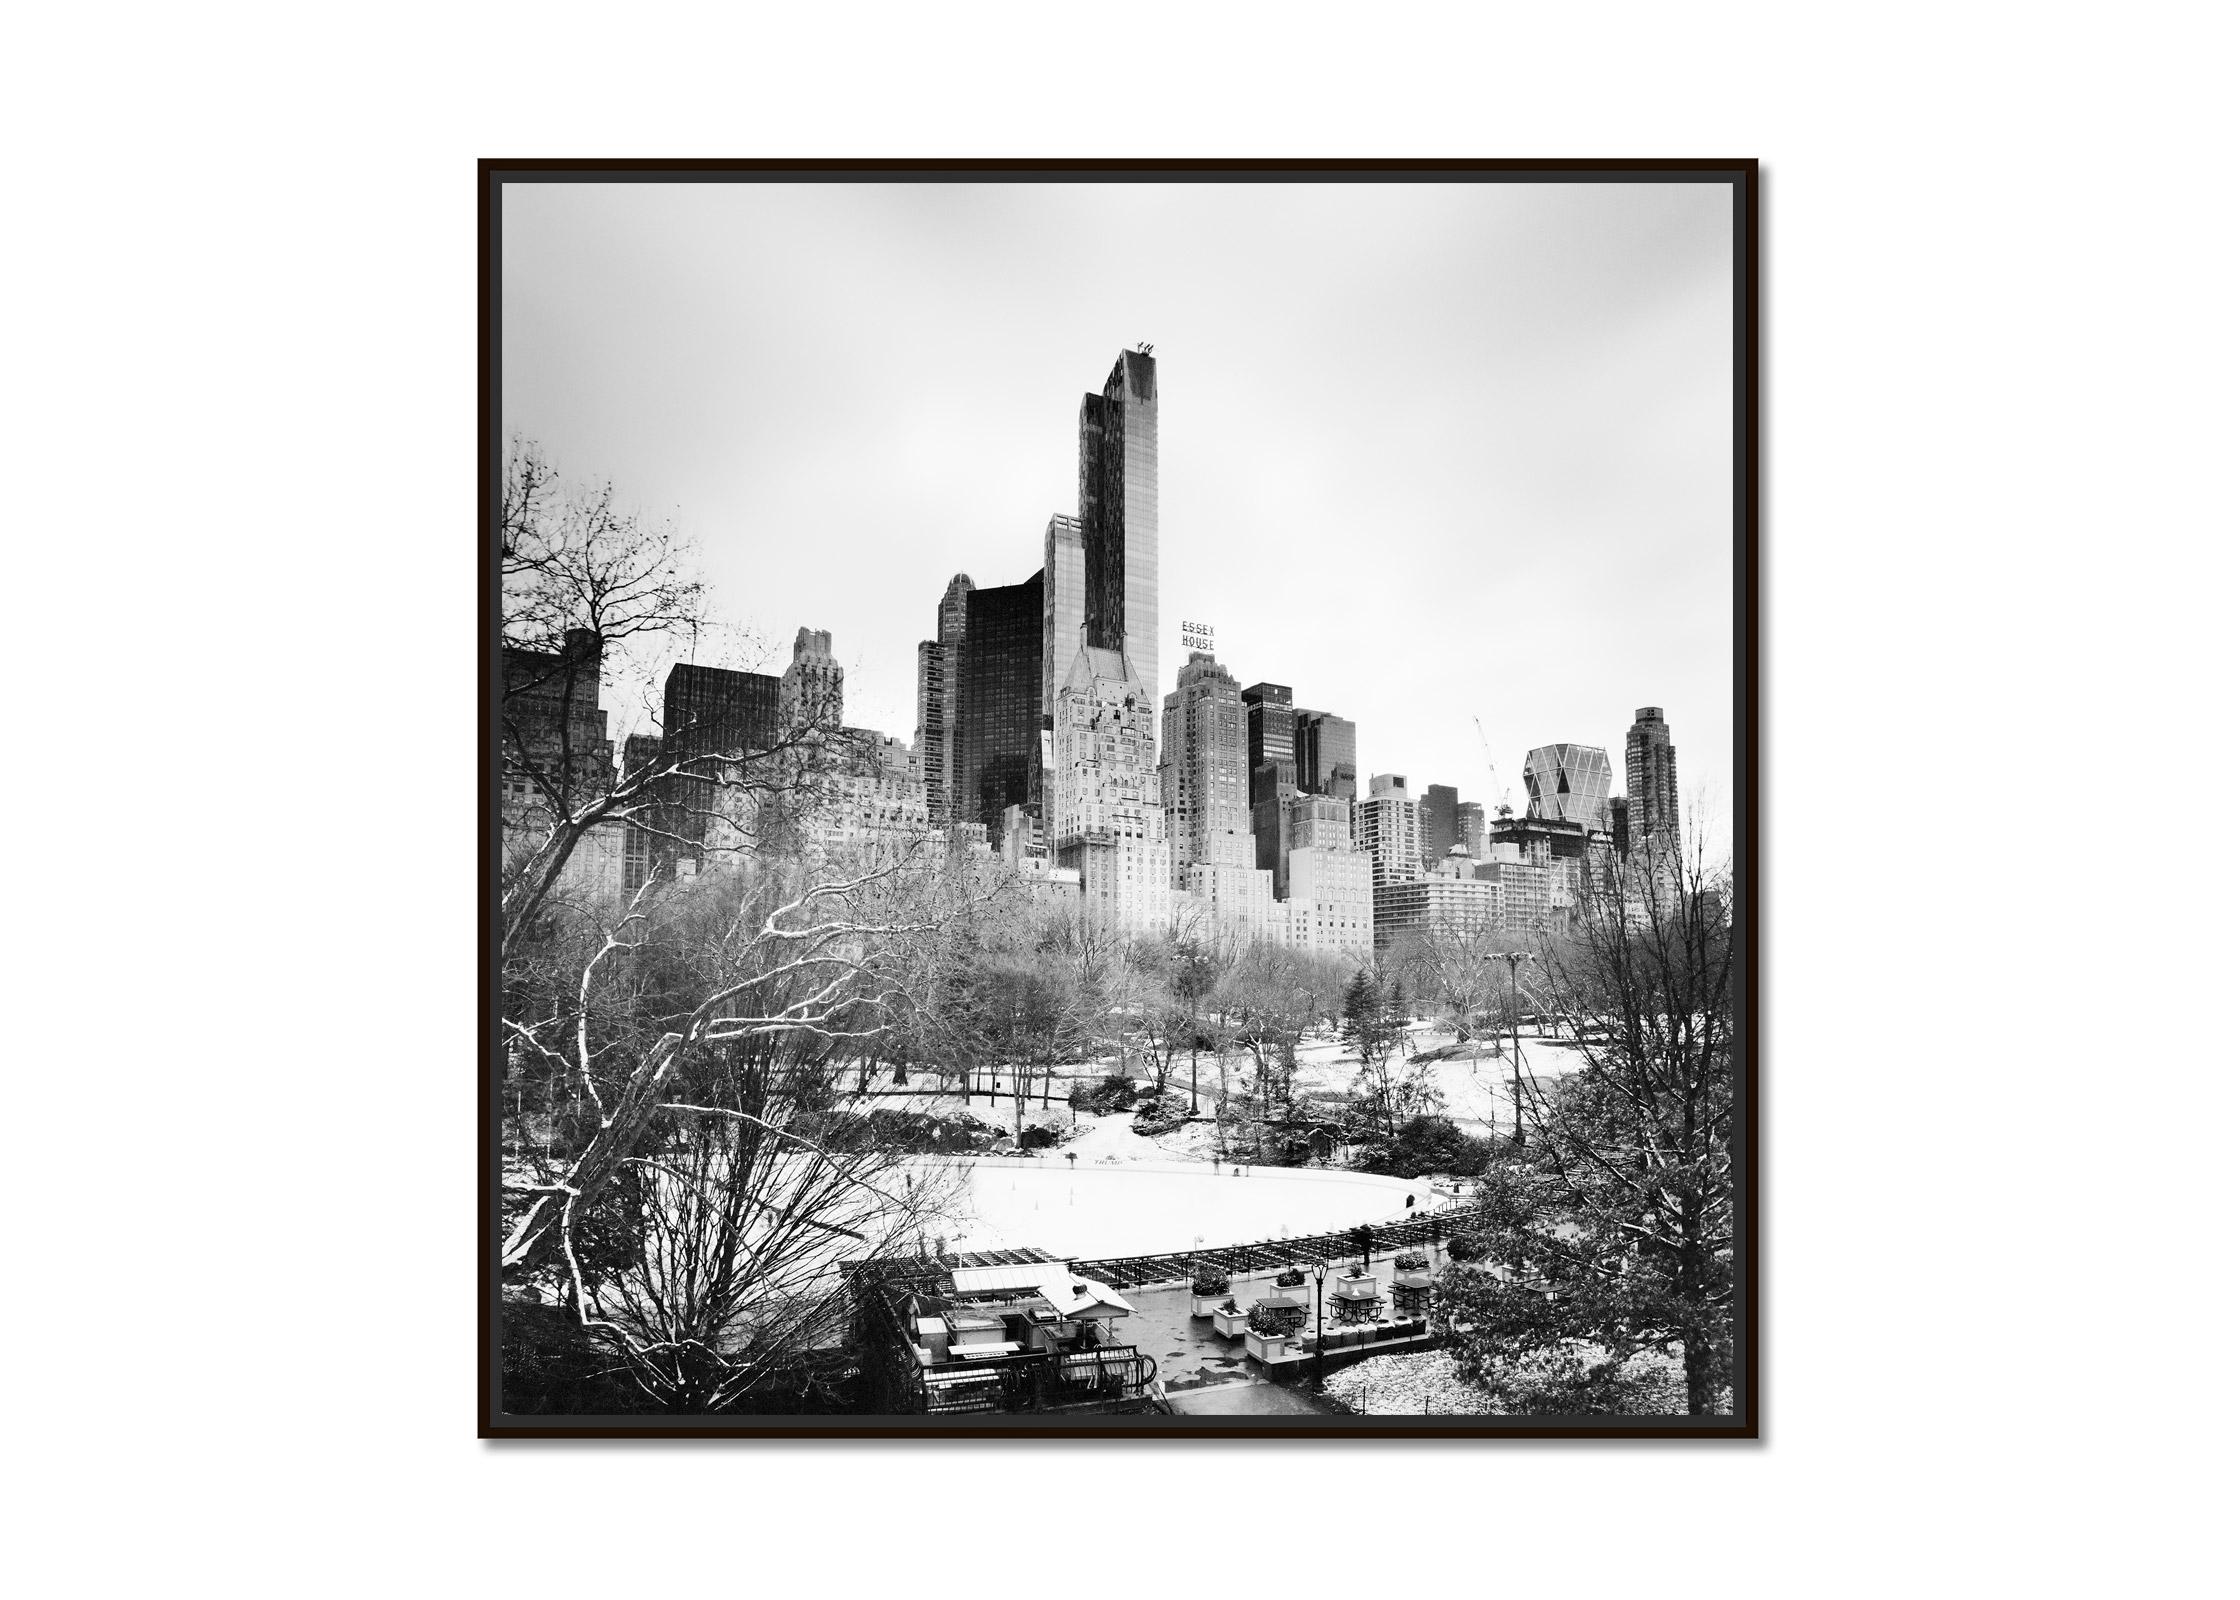 Essex House, Central Park, New York, USA, Schwarz-Weiß-Fotografie, Stadtlandschaft – Photograph von Gerald Berghammer